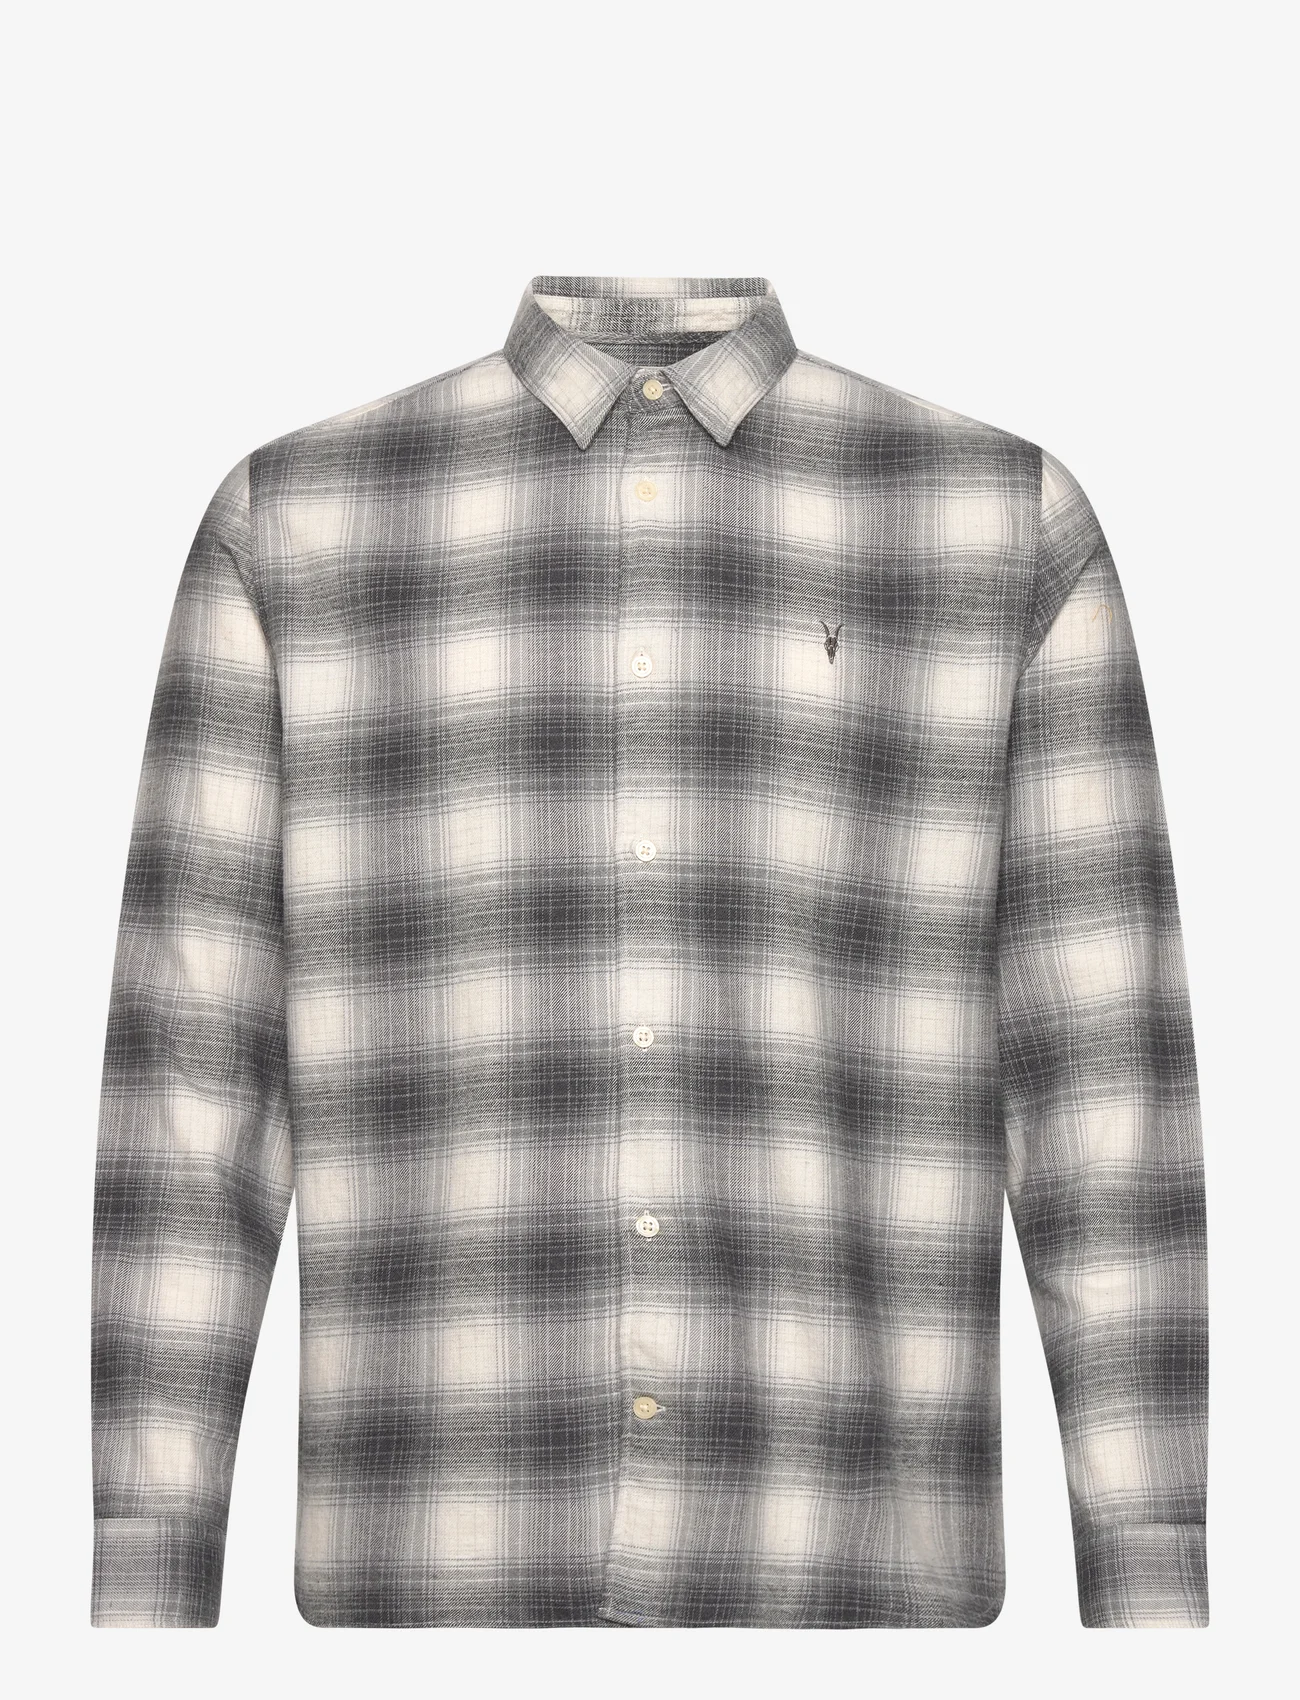 AllSaints - OMEGA LS SHIRT - checkered shirts - rock grey - 0